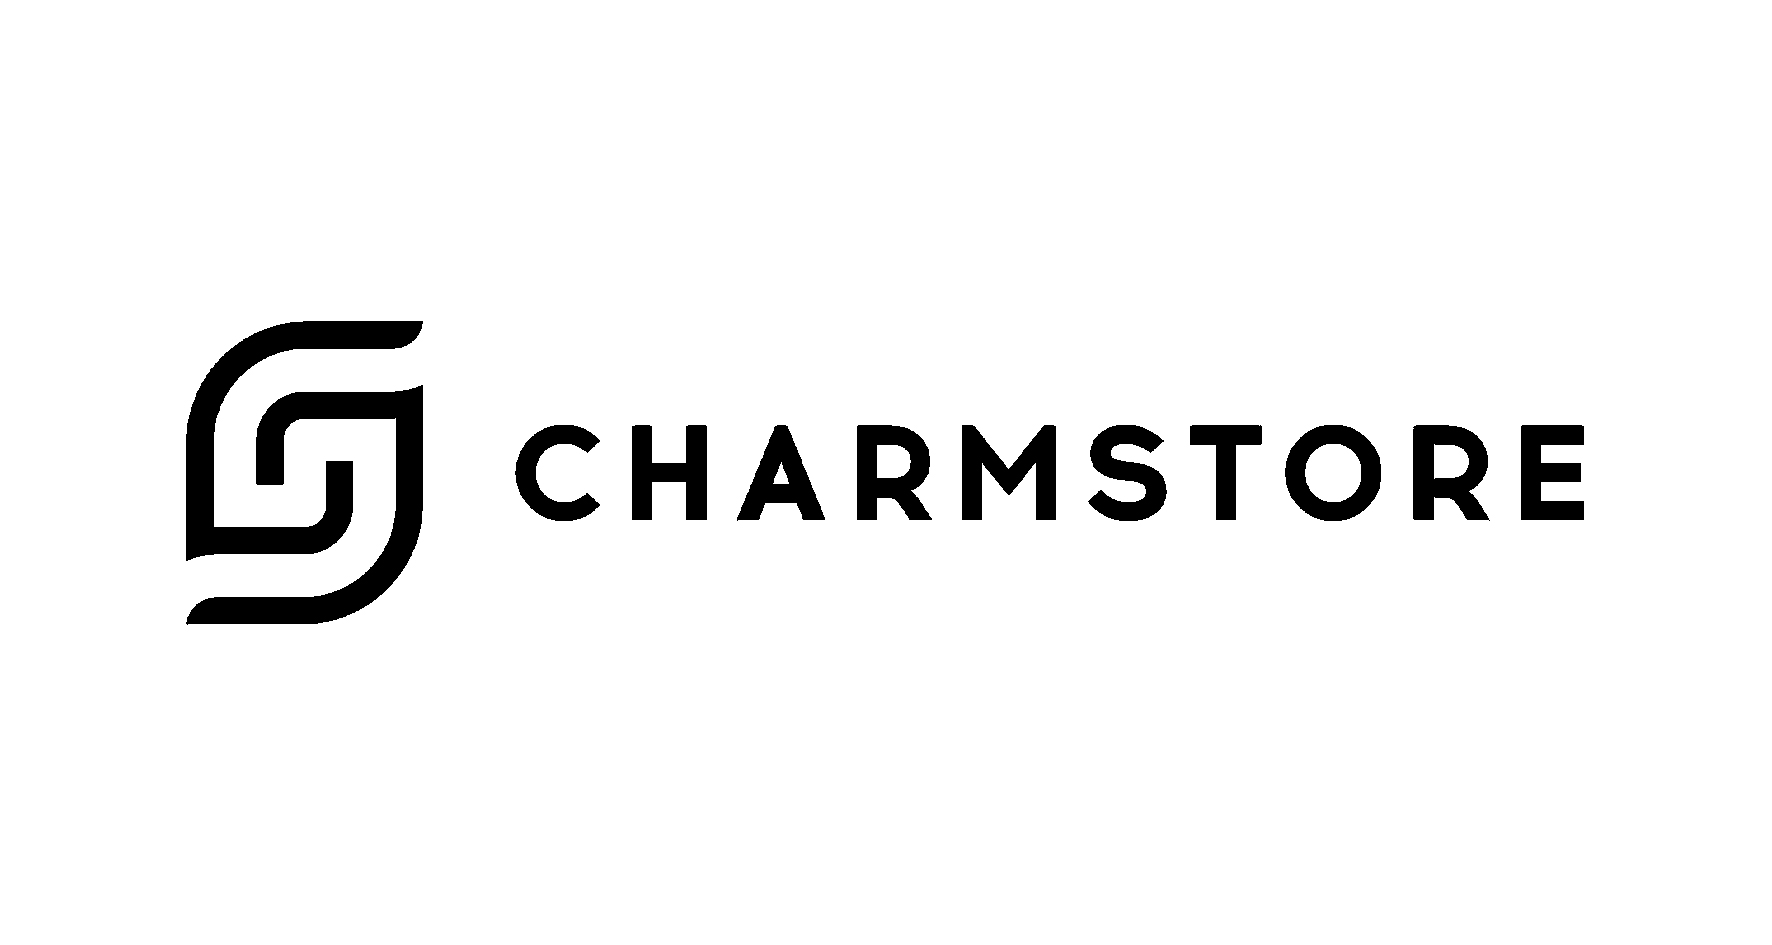 Charmstore Одежда и аксессуары, купить онлайн, Charmstore в универмаге Bolshoy